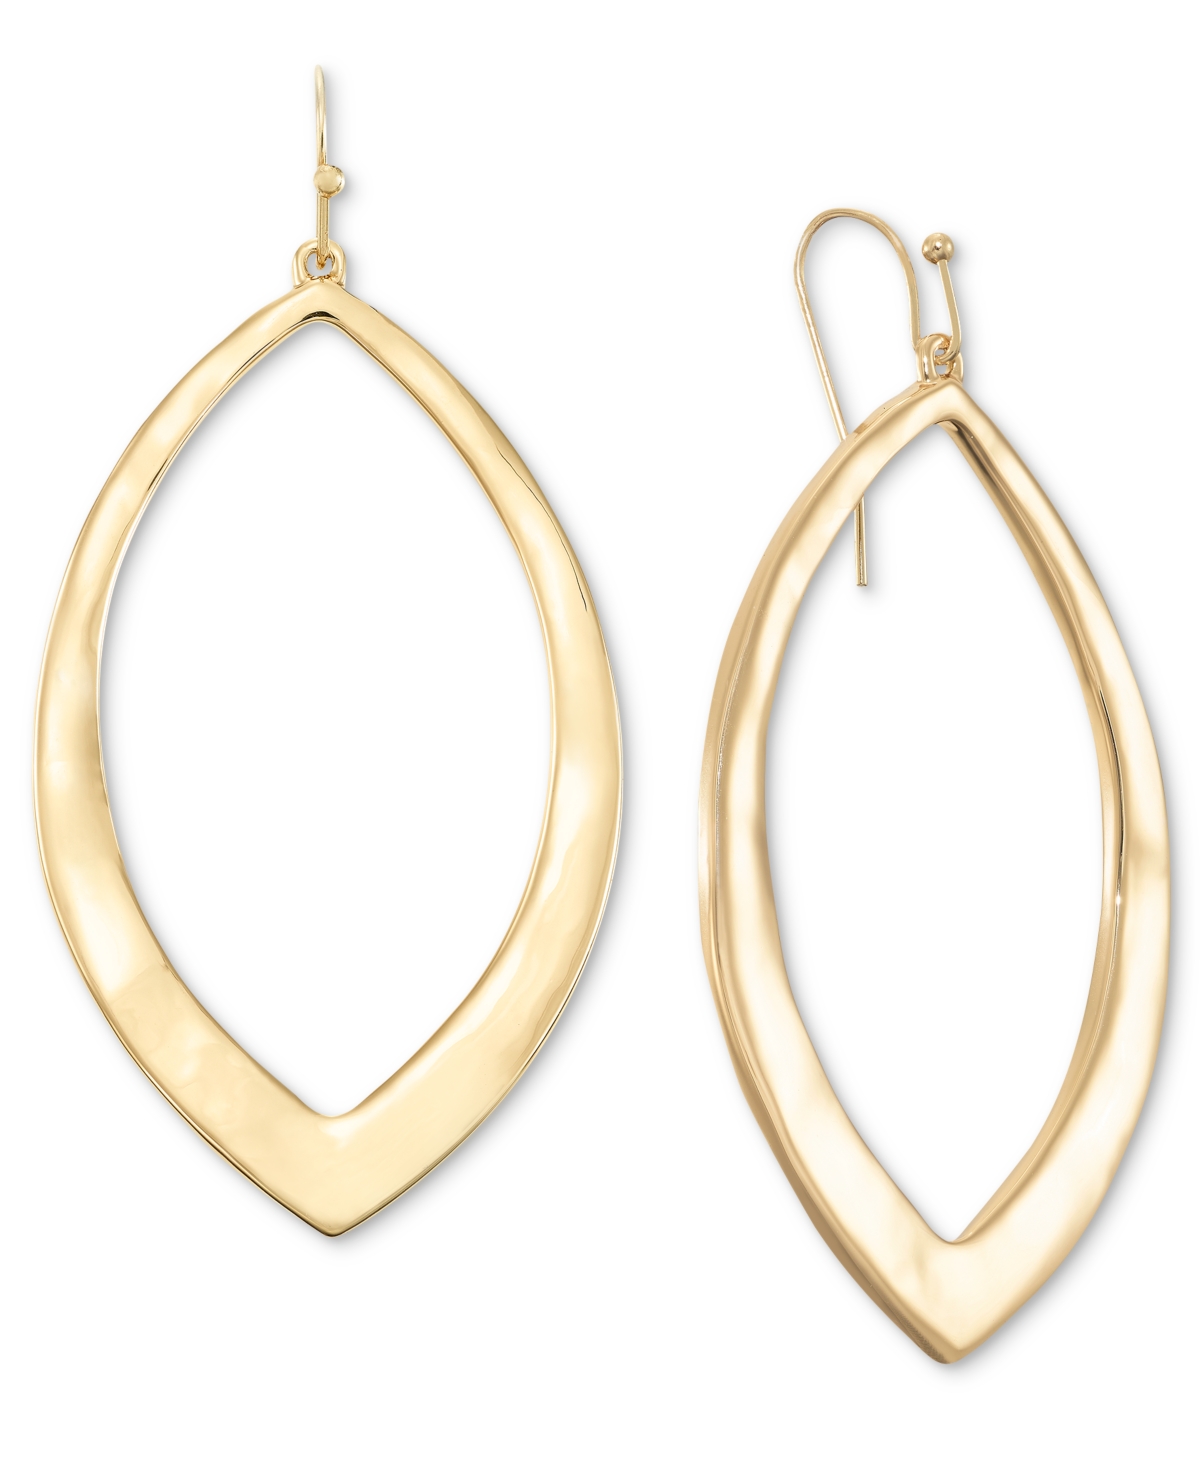 Gold-Tone Open Tear-Shape Drop Earrings, Created for Macy's - Gold